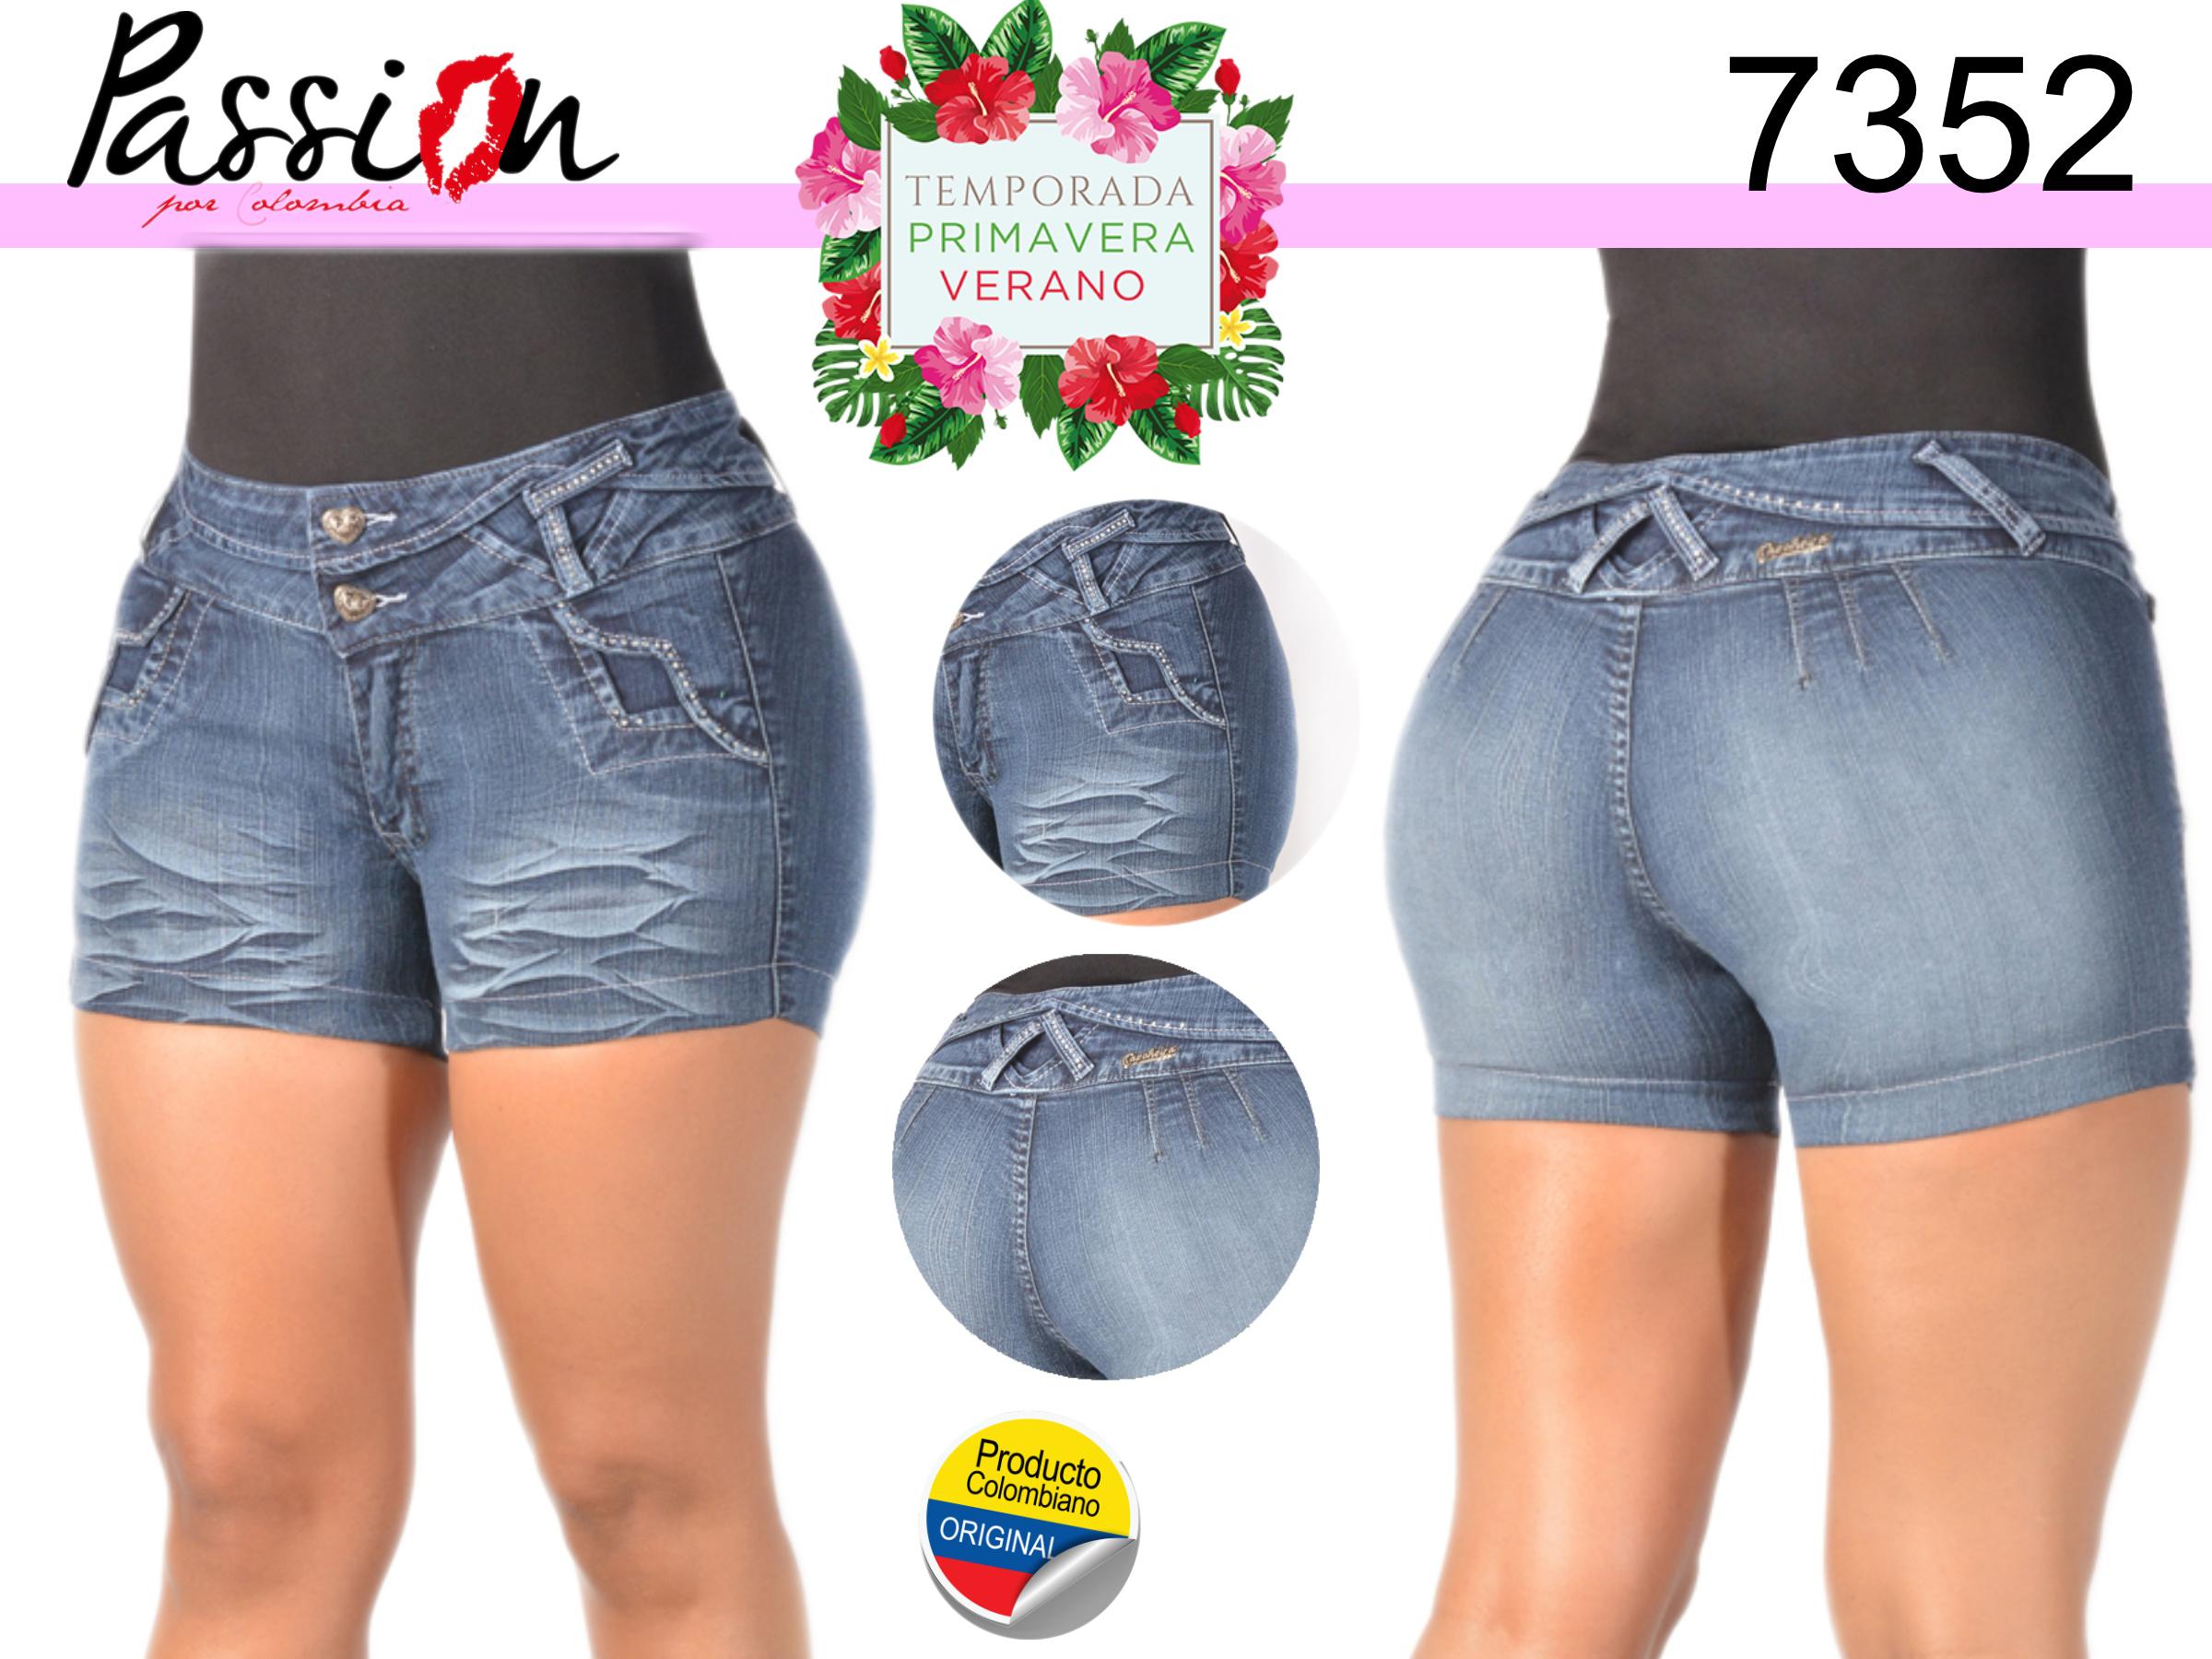 Colombian Short Jean in Promotion